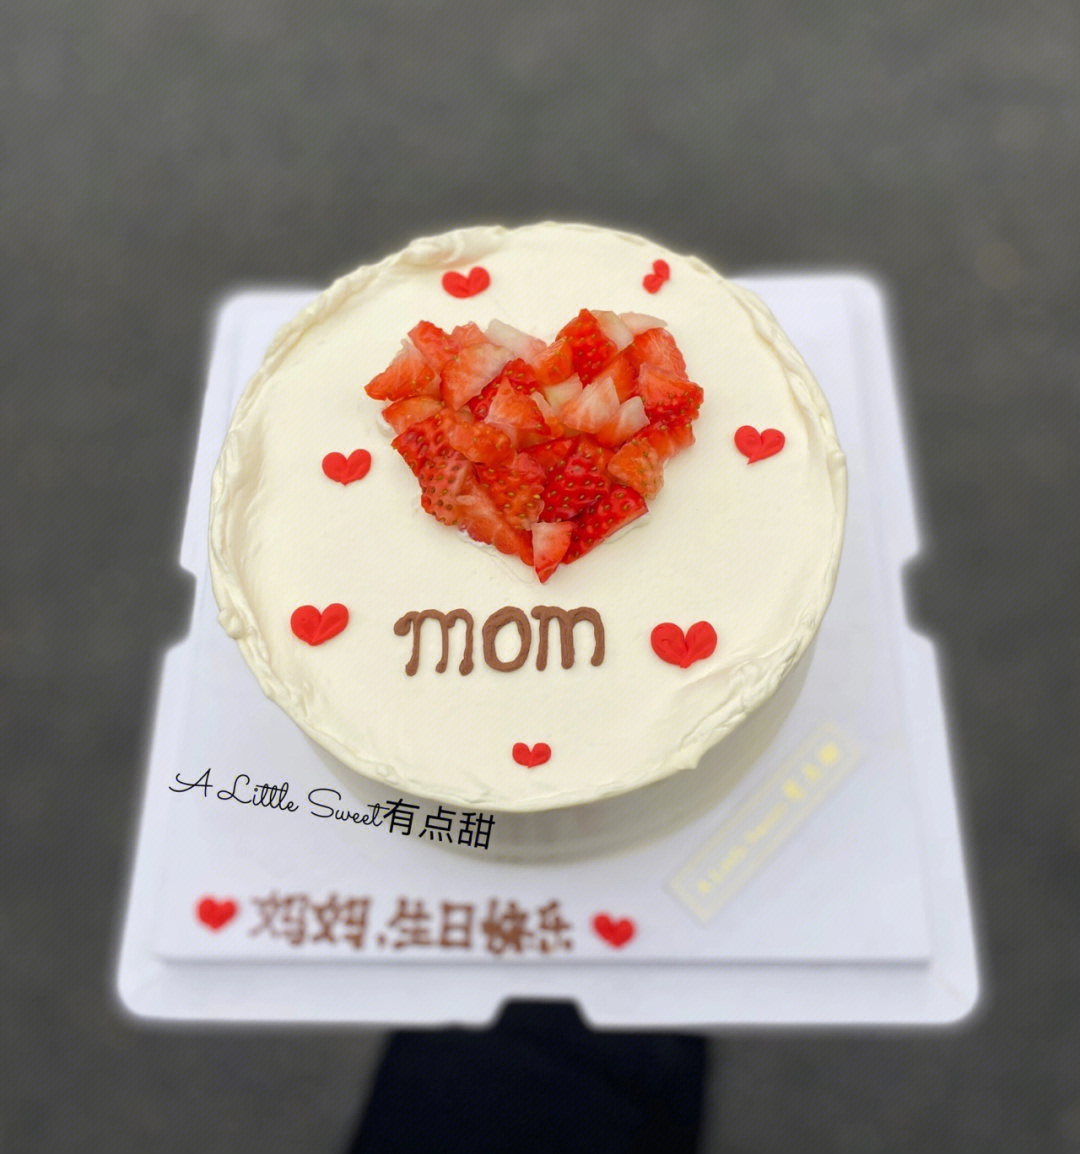 祝福妈妈生日蛋糕图片大全-